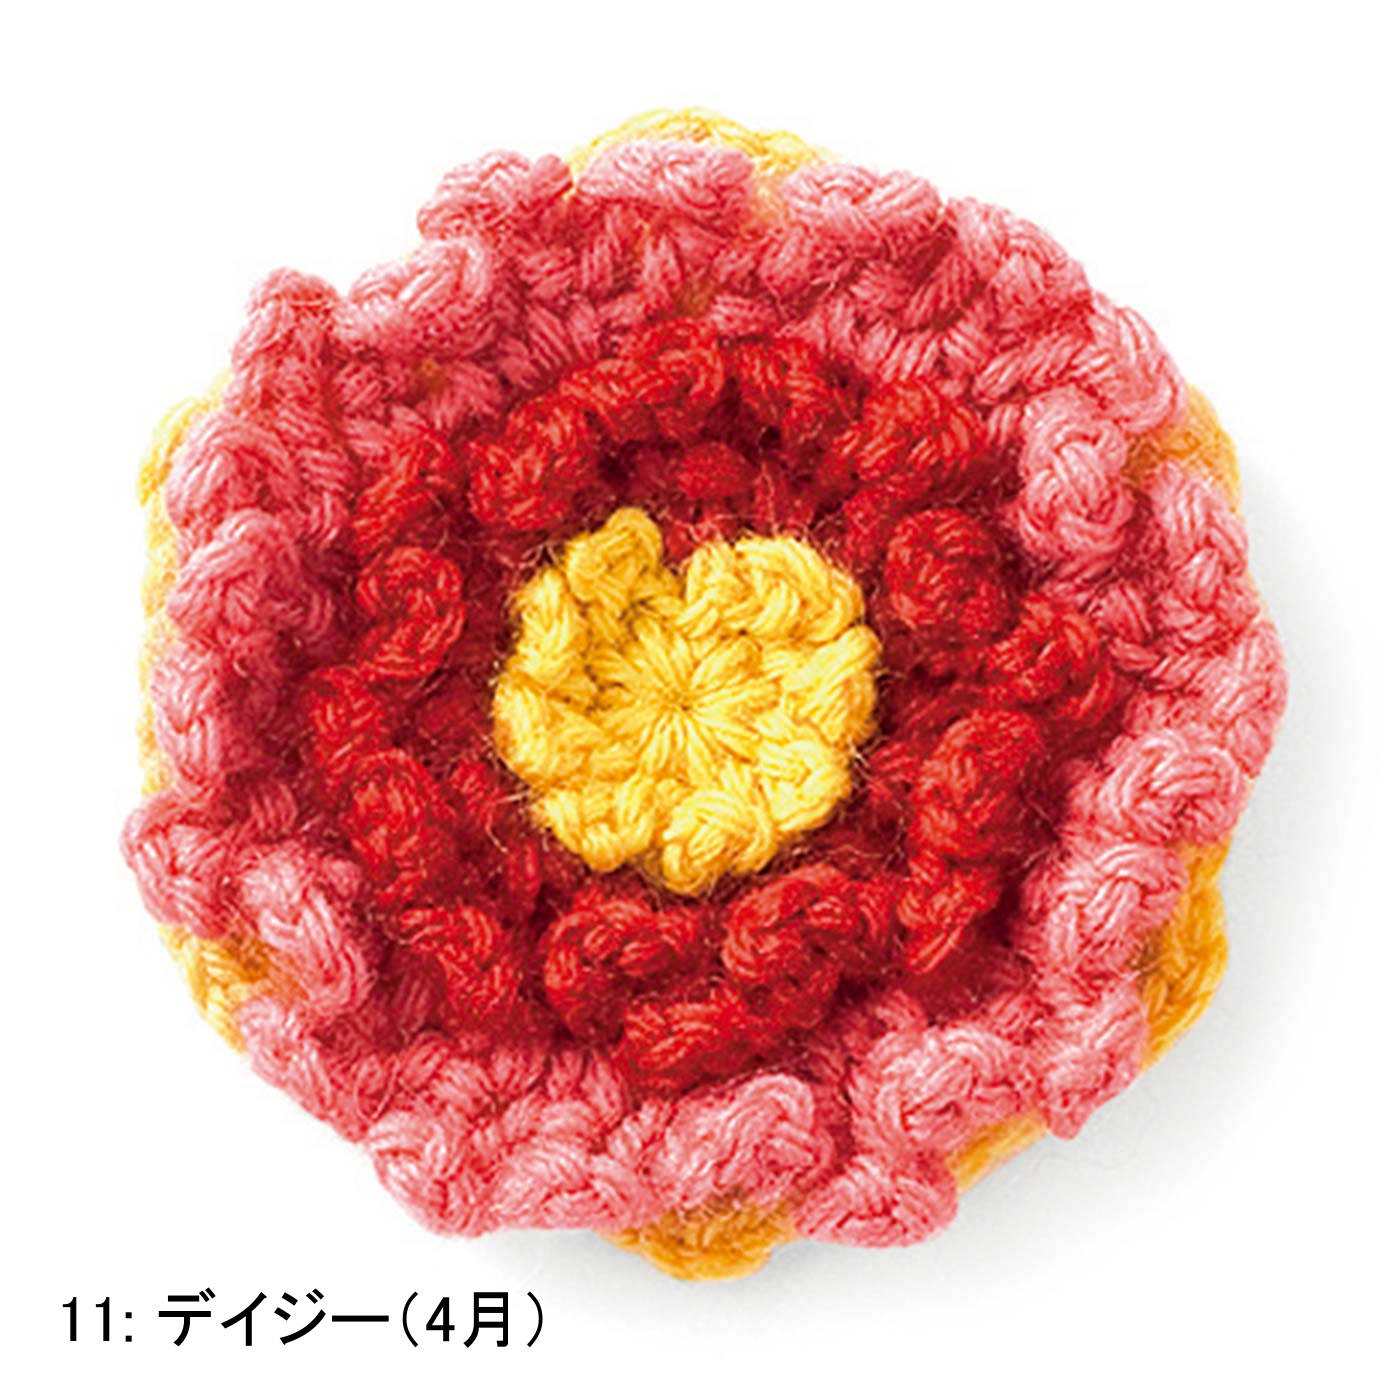 重なる花びらのボリューム感が魅力 誕生月のお花をイメージした立体モチーフ編み その他編み物 編み物 手芸 手づくりキット レディースファッション 雑貨のアウトレット通販 Real Stock